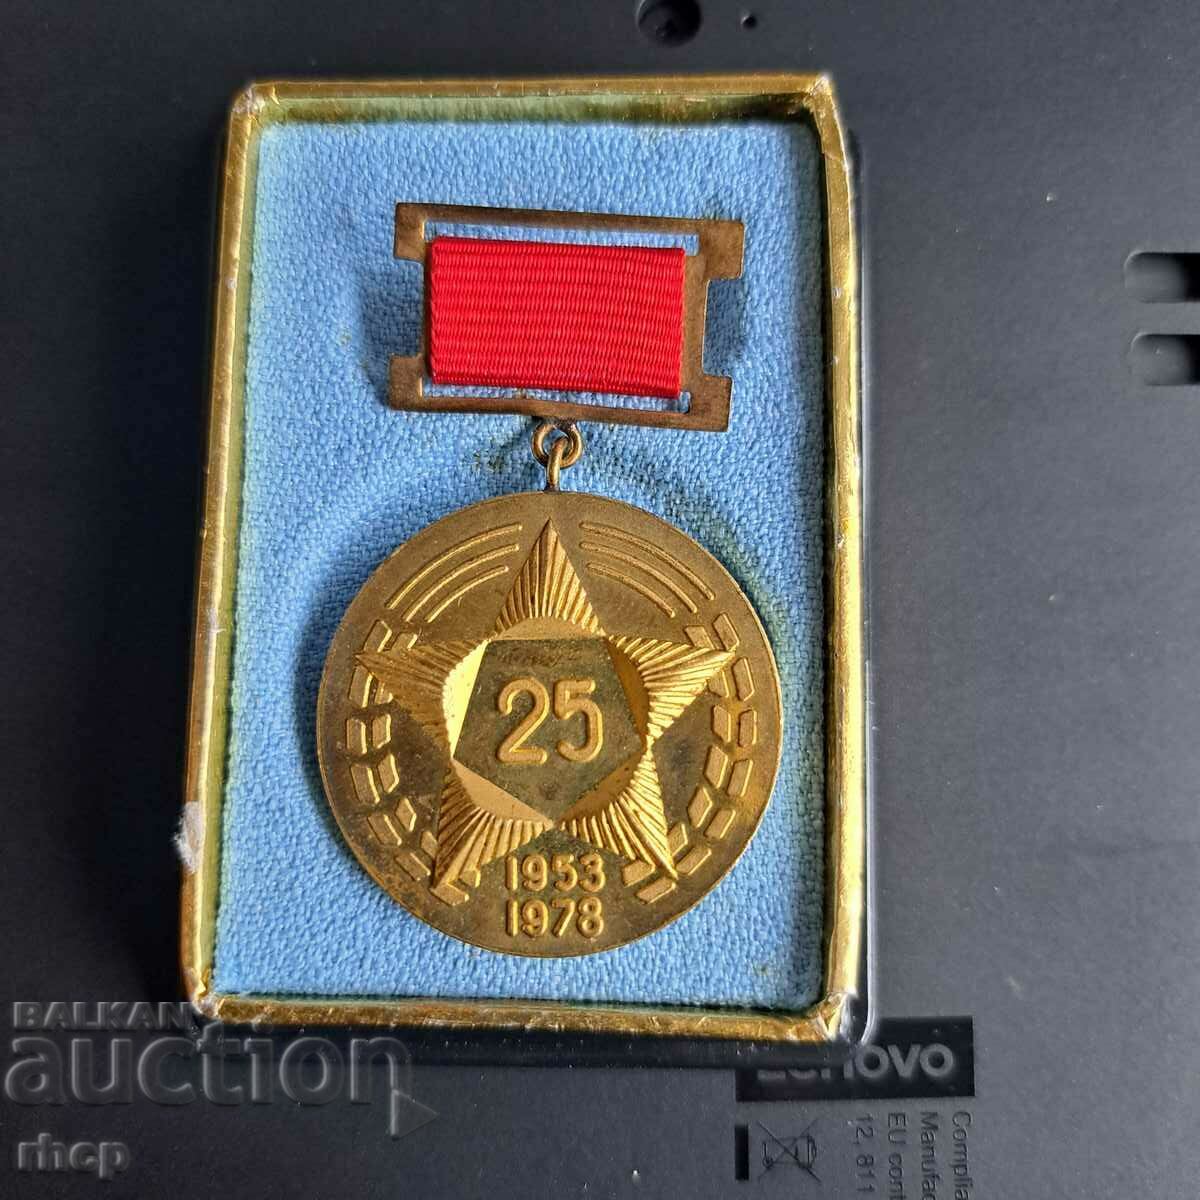 20 години Хлебозавод-1 София 1953-1978 медал с кутия